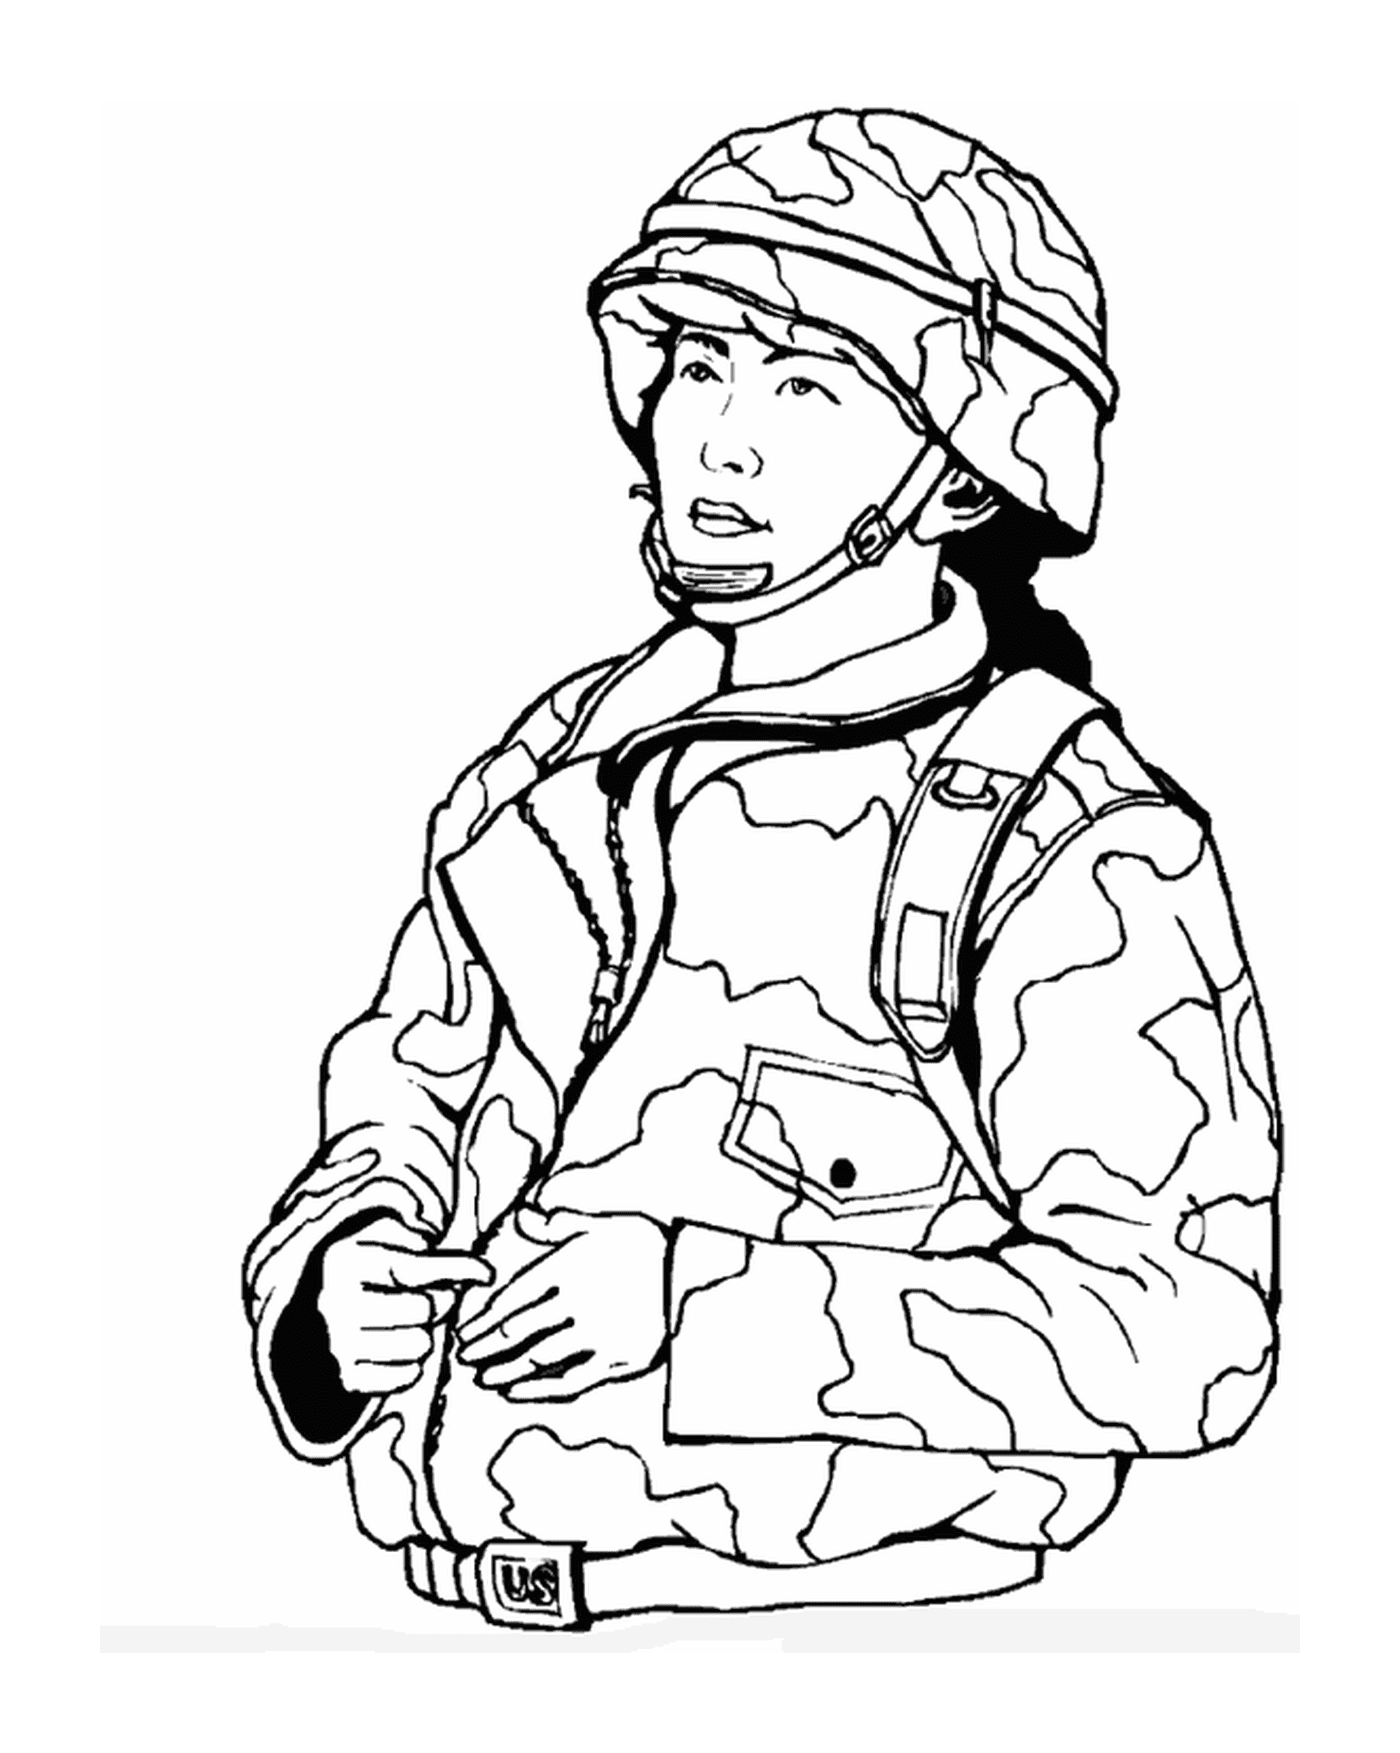  Militärische Frau: ein Soldat in Tarnjacke und Helm 